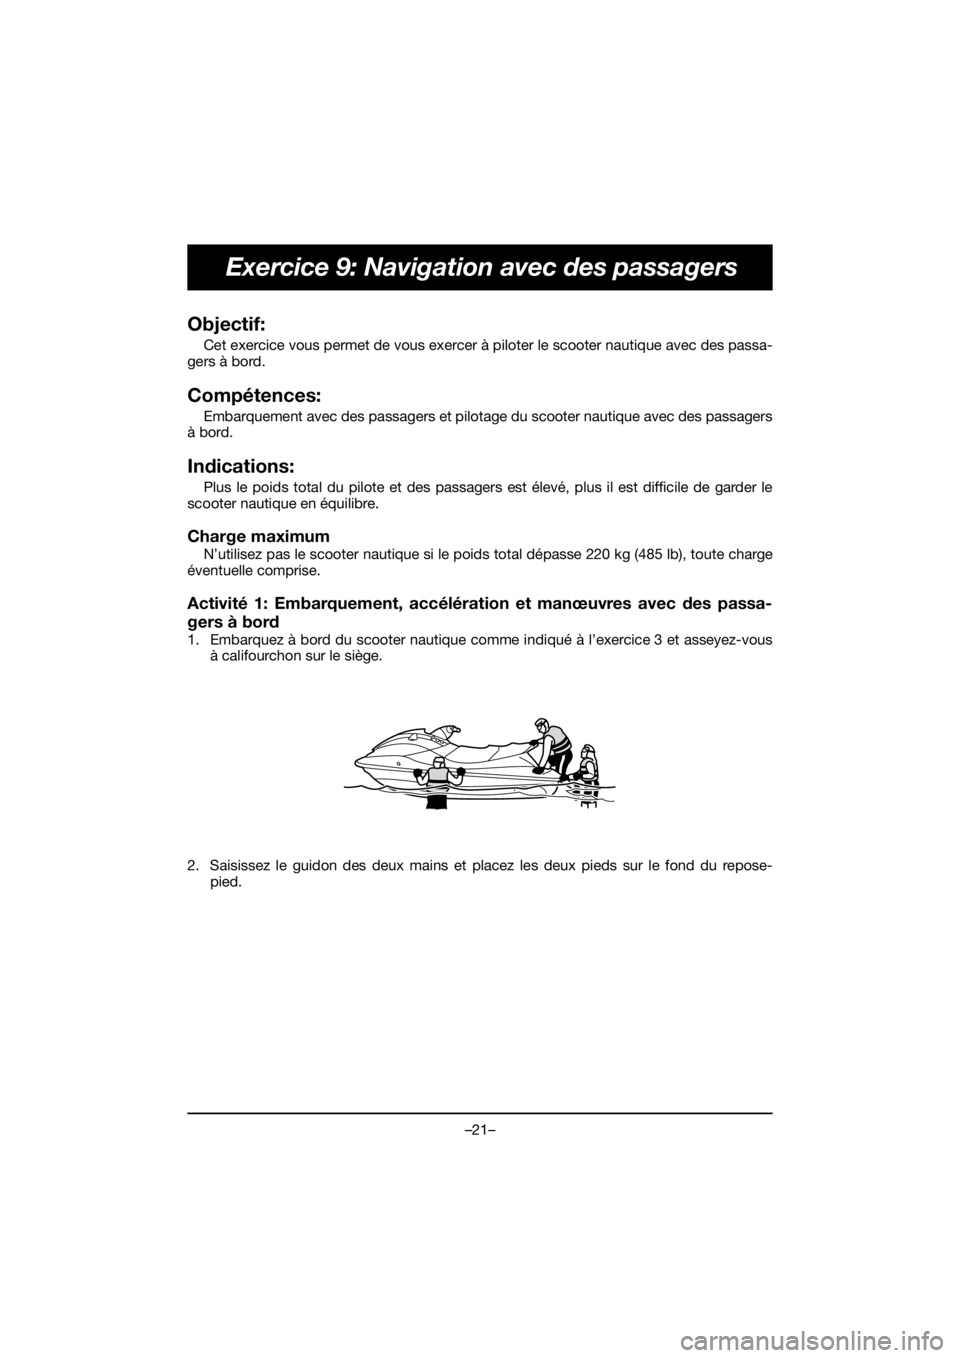 YAMAHA EX 2019  Manual de utilização (in Portuguese) –21–
Exercice 9: Navigation avec des passagers
Objectif: 
Cet exercice vous permet de vous exercer à piloter le scooter nautique avec des passa-
gers à bord.
Compétences: 
Embarquement avec des